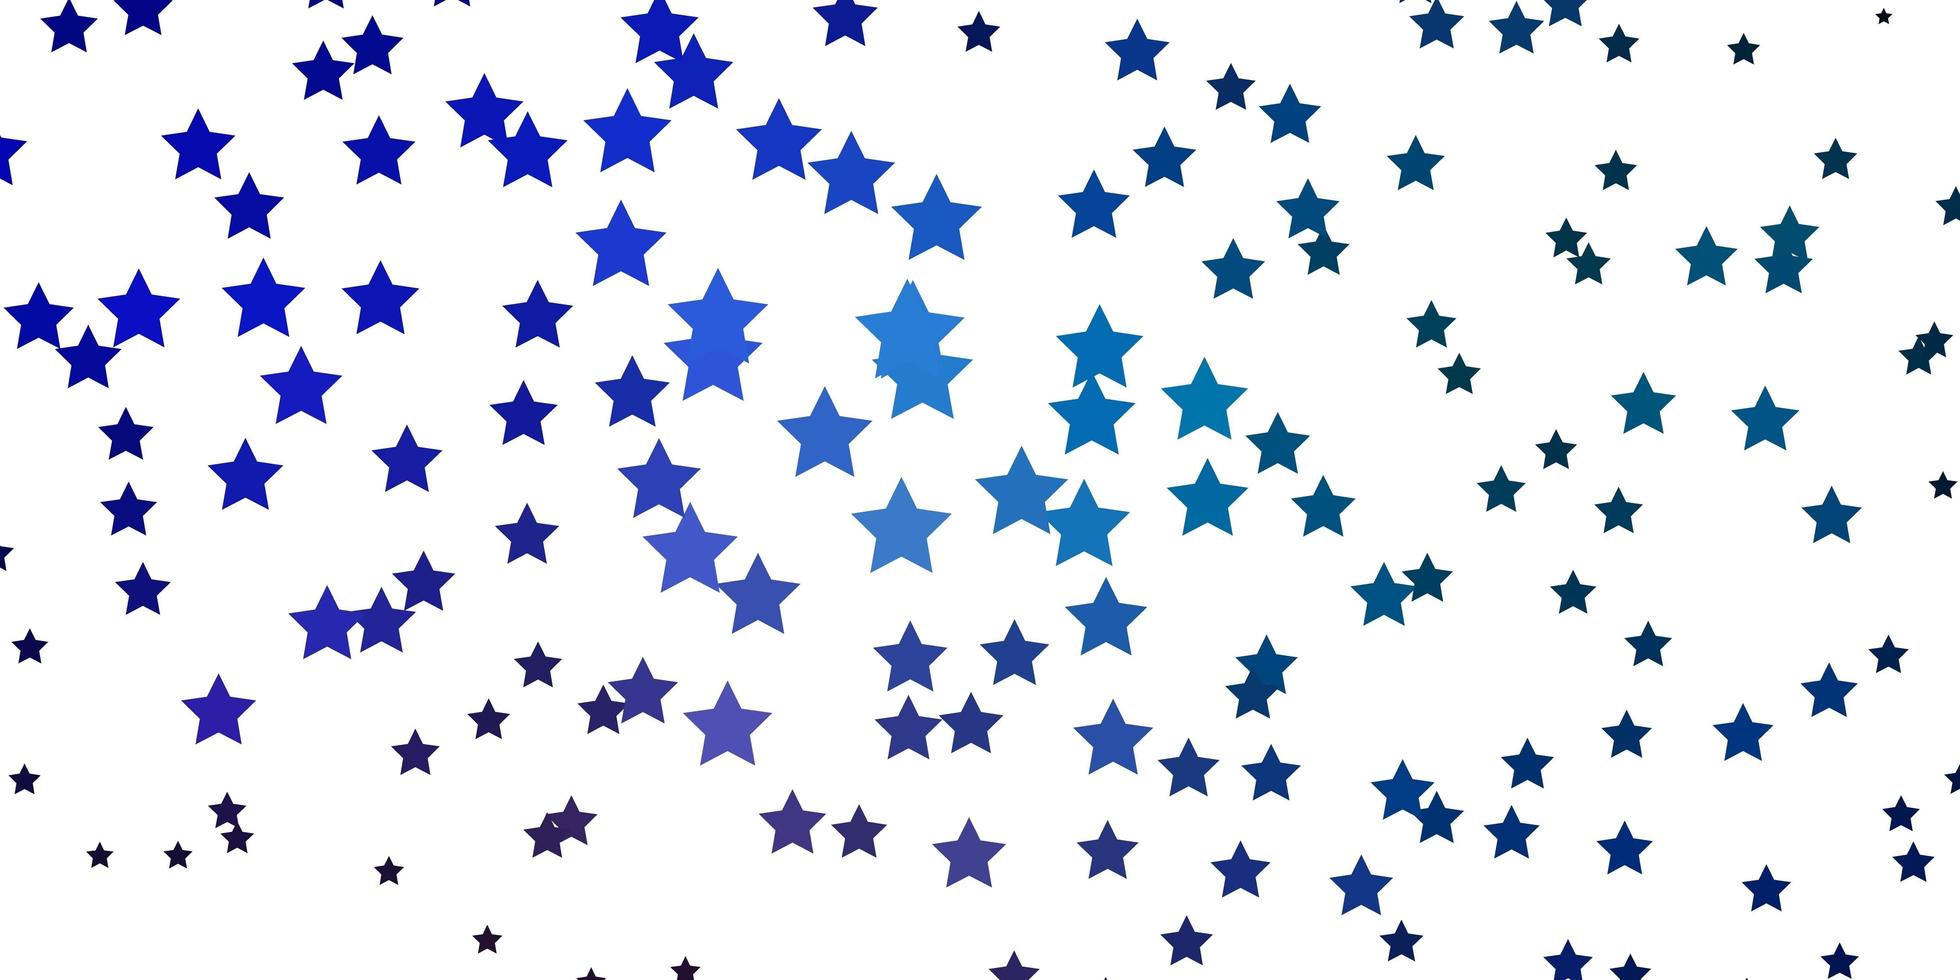 padrão de vetor azul e vermelho claro com estrelas abstratas. ilustração abstrata geométrica moderna com estrelas. tema para telefones celulares.